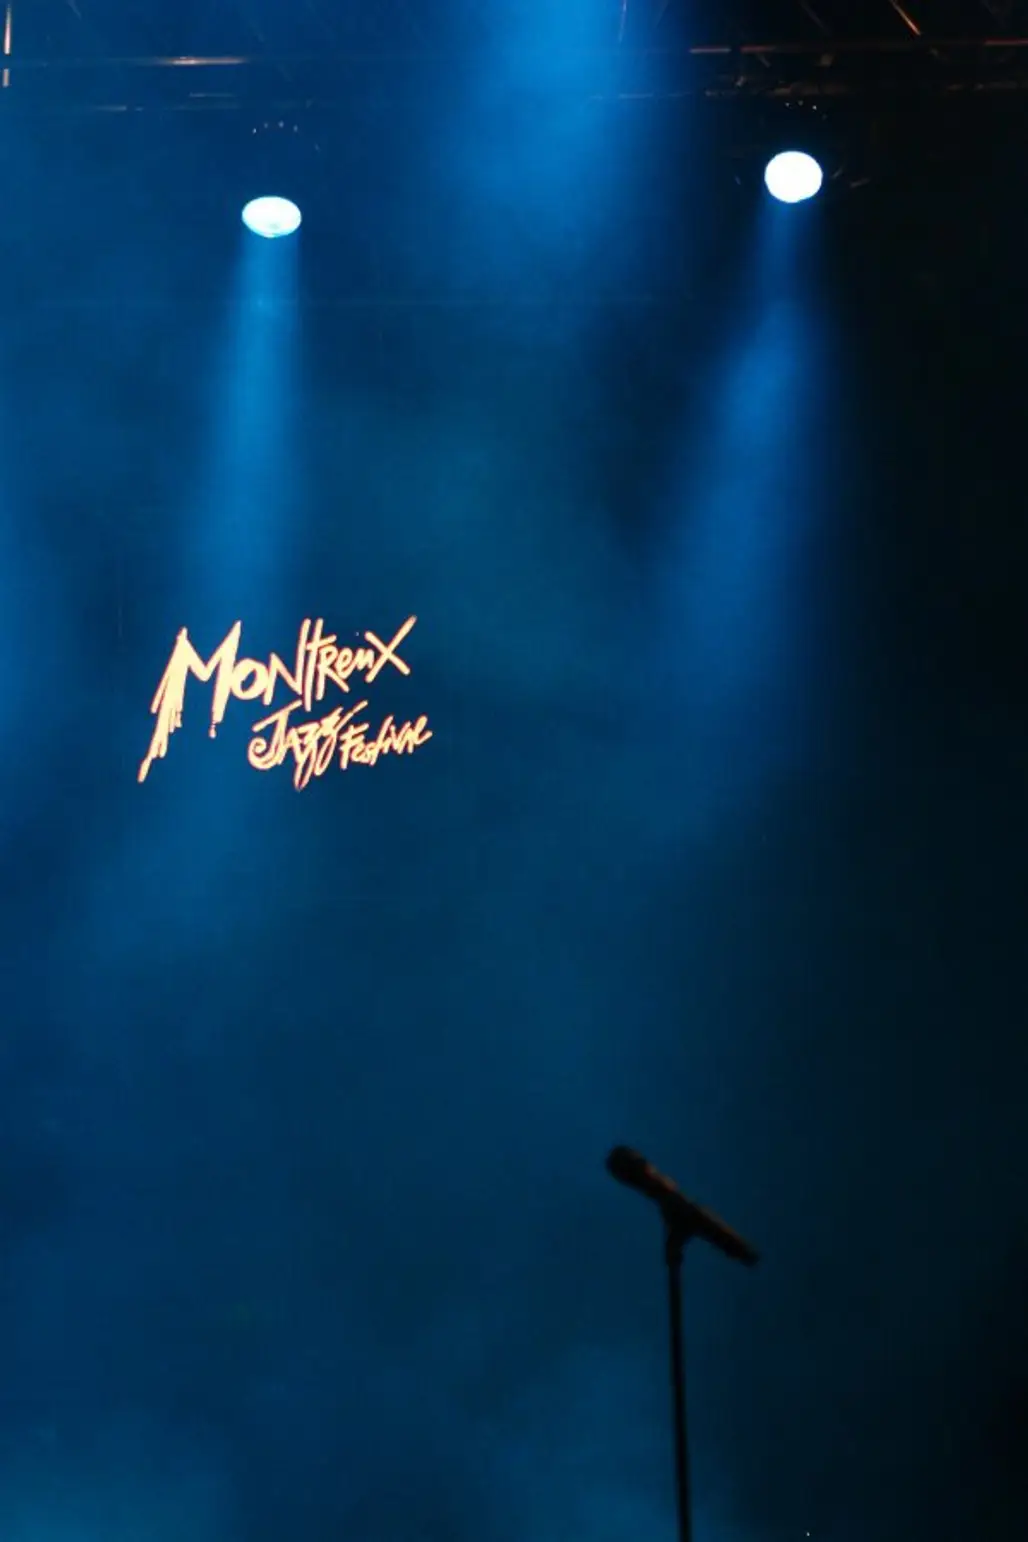 Montreux Jazz Festival, Montreux, Switzerland - July